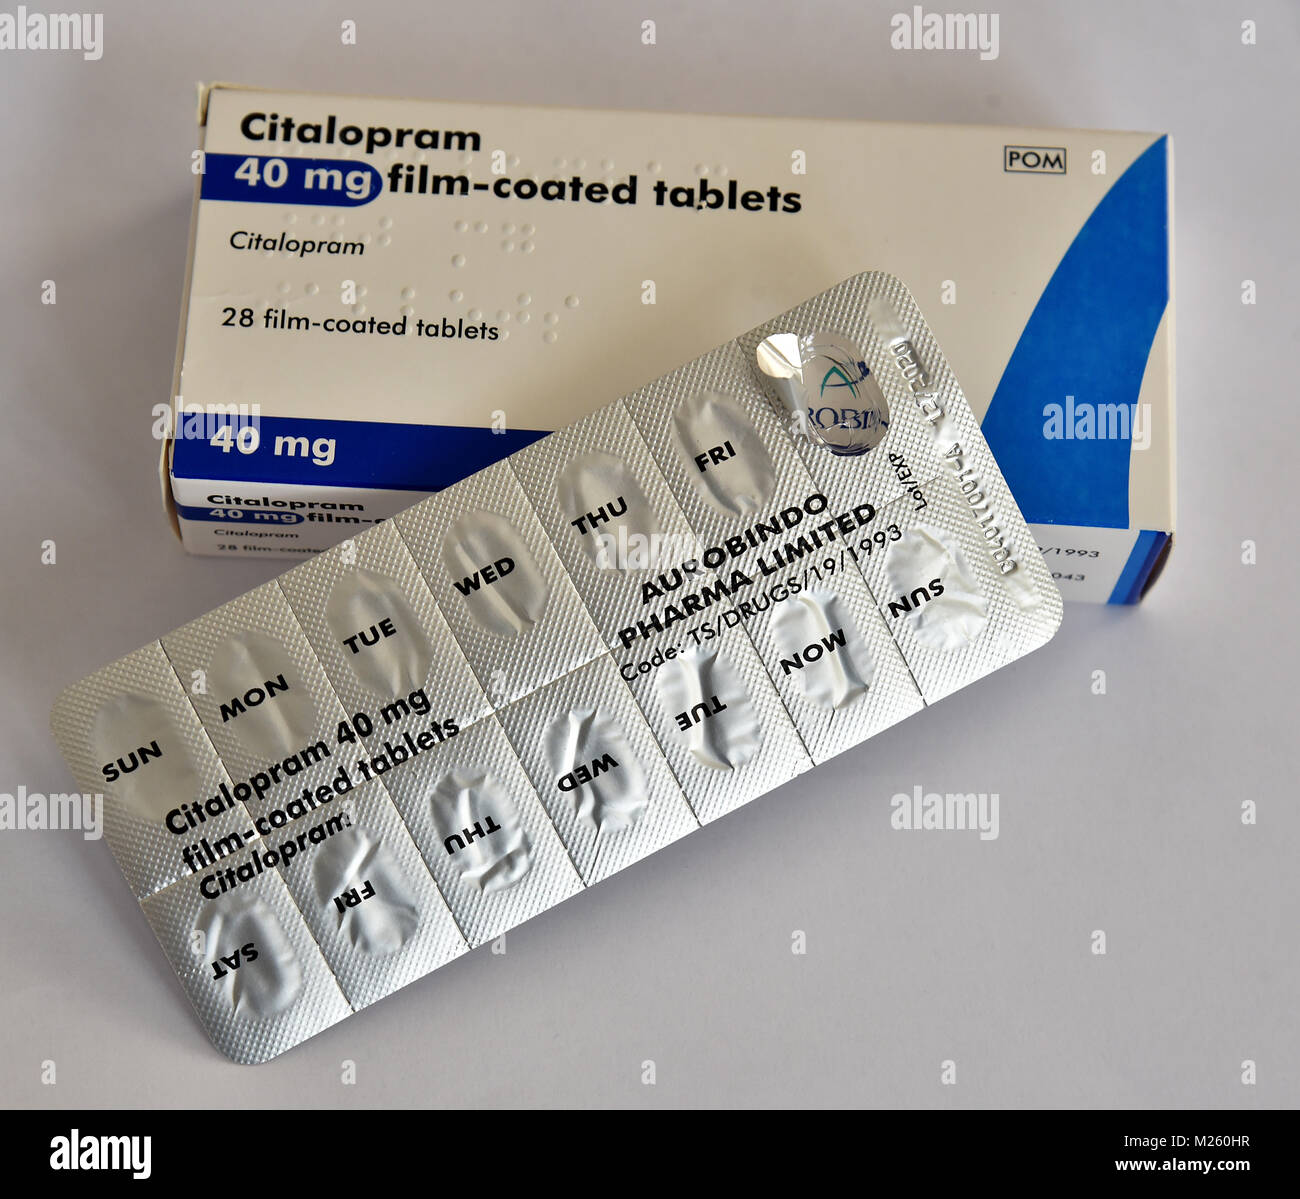 Rezept Tabletten, Amlodipin für hohen Blutdruck, Doxycyline ein  Antibiotikum ist, Citalopram ist für Angst genommen Stockfotografie - Alamy